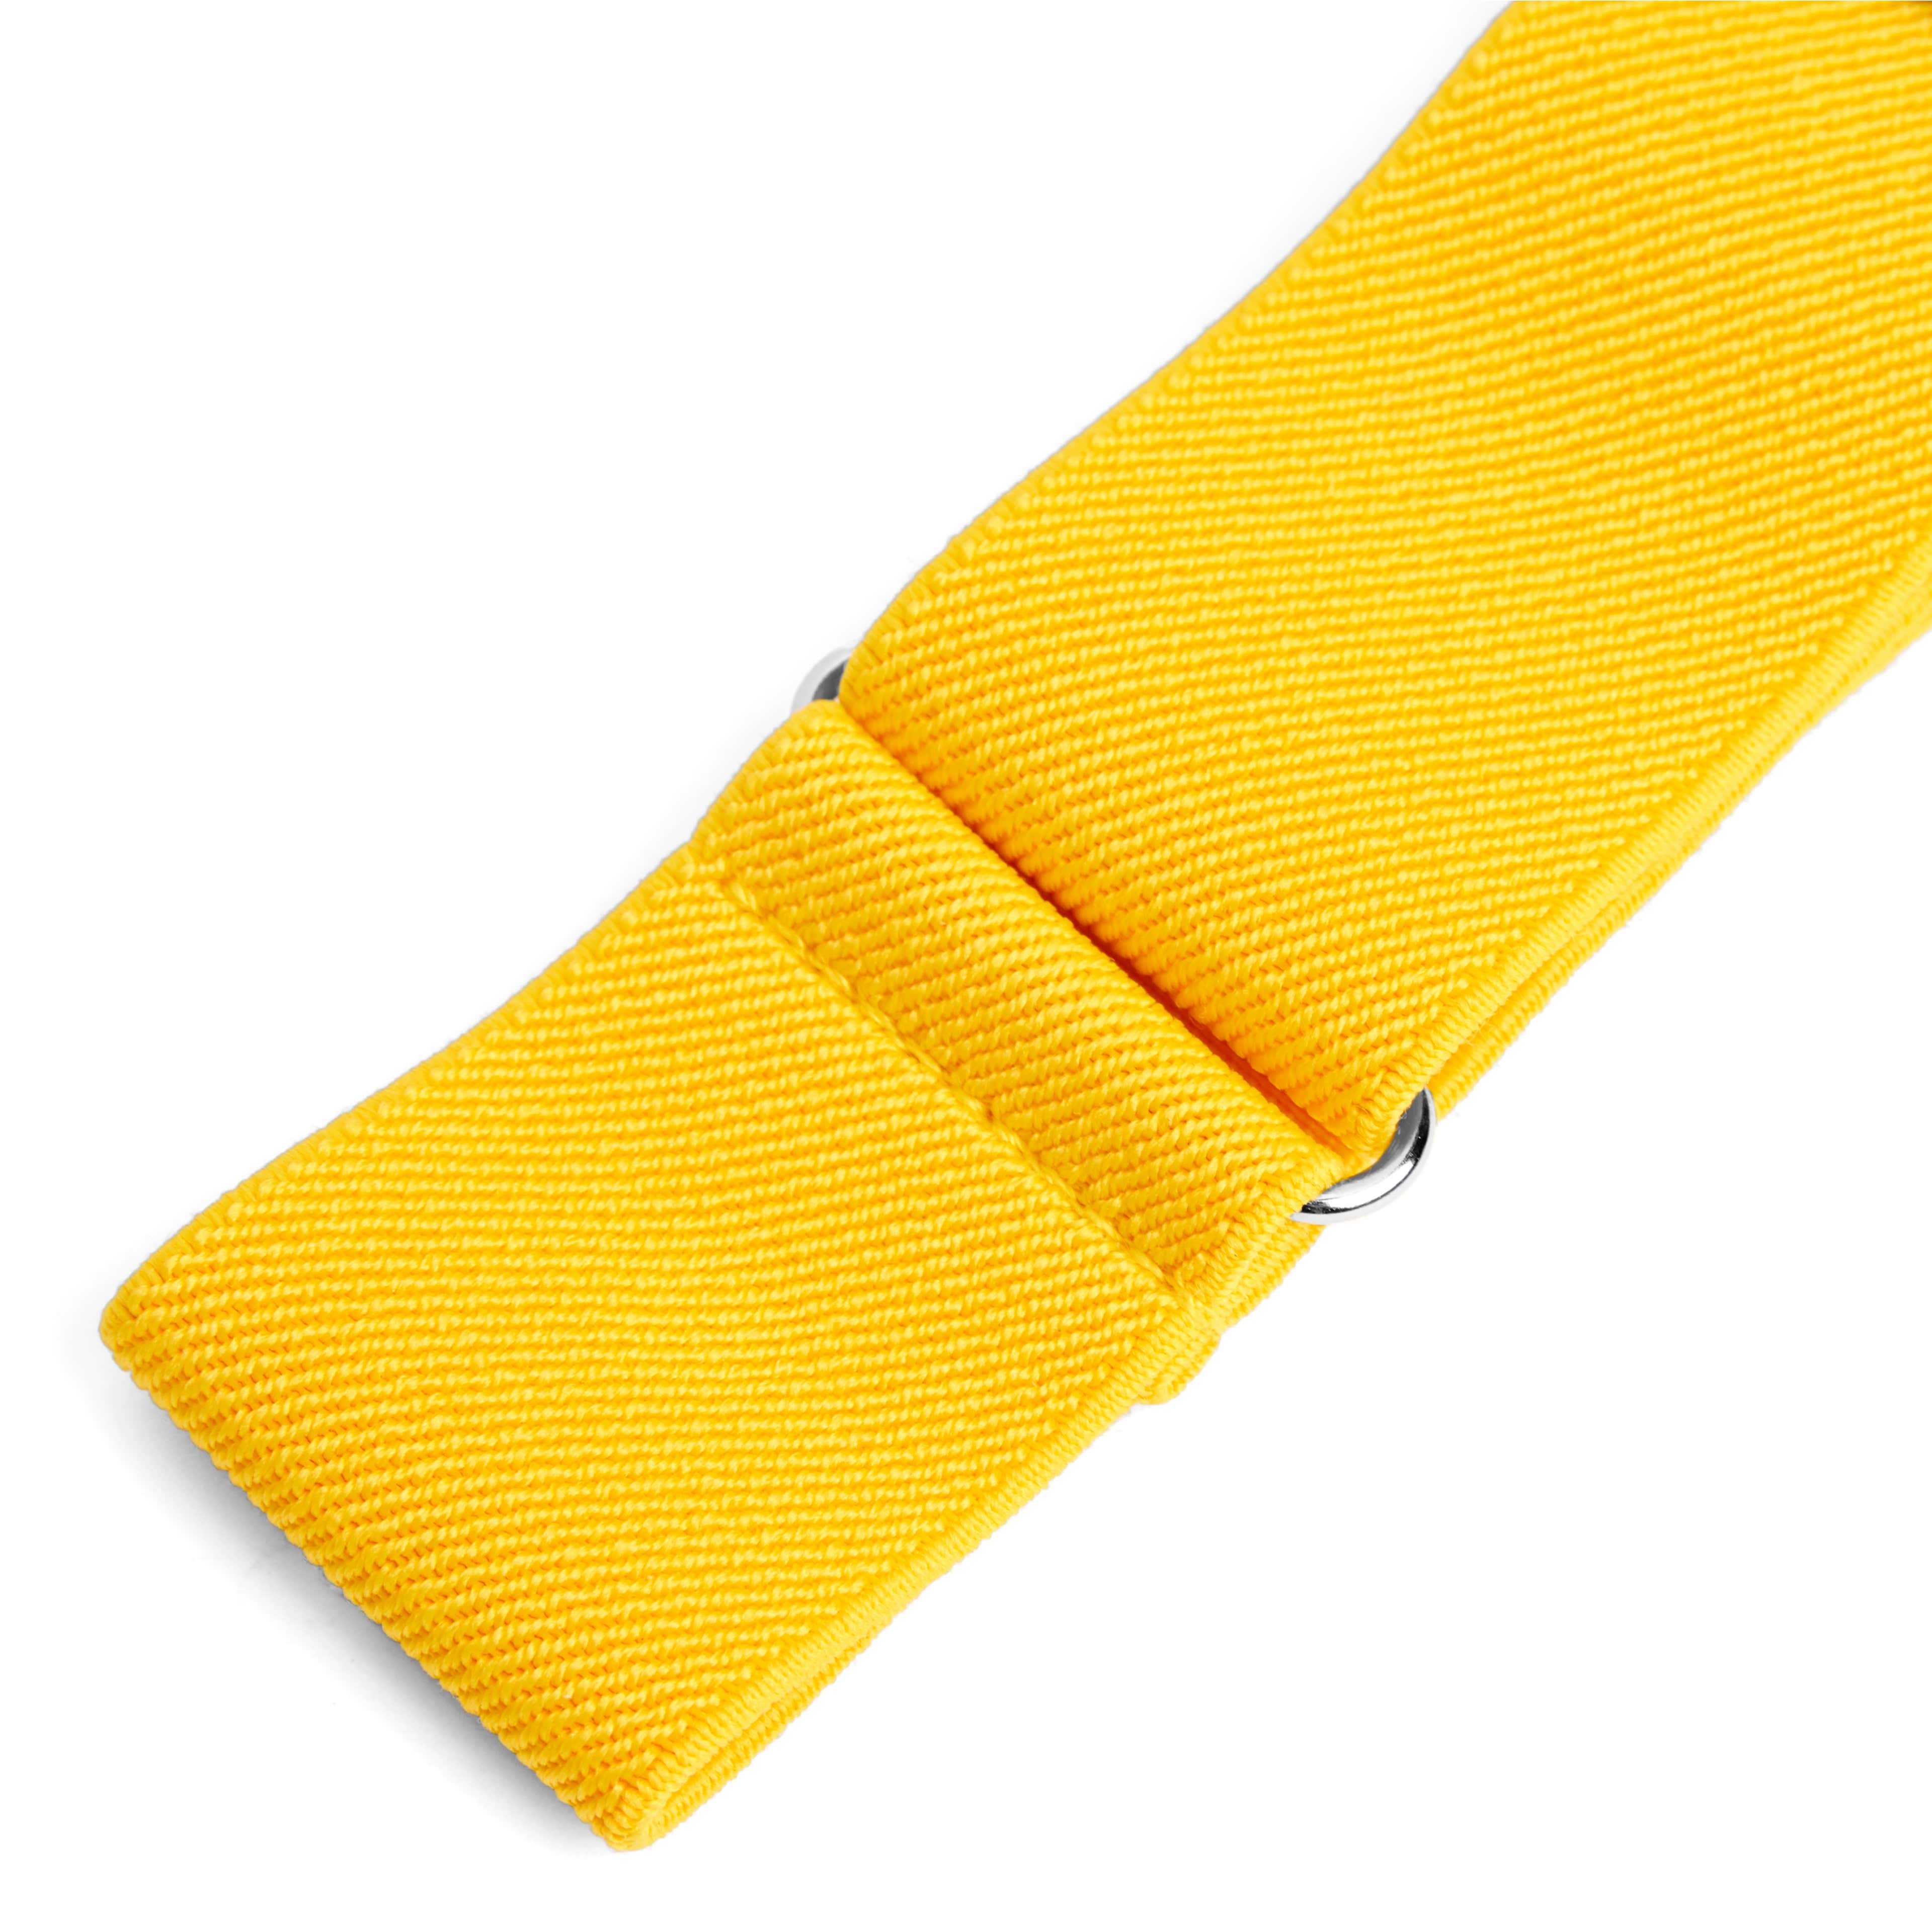 Wide Golden Yellow Sleeve Garters  - 2 - hover gallery